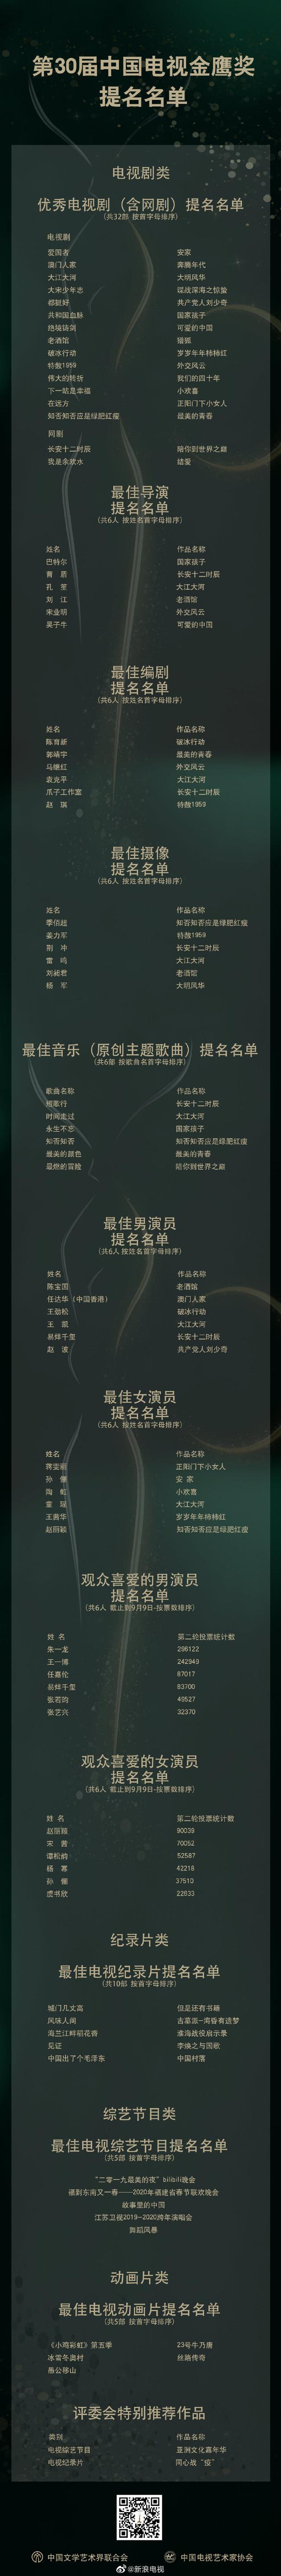 第30届金鹰奖提名名单出炉 赵丽颖双提名瞩目